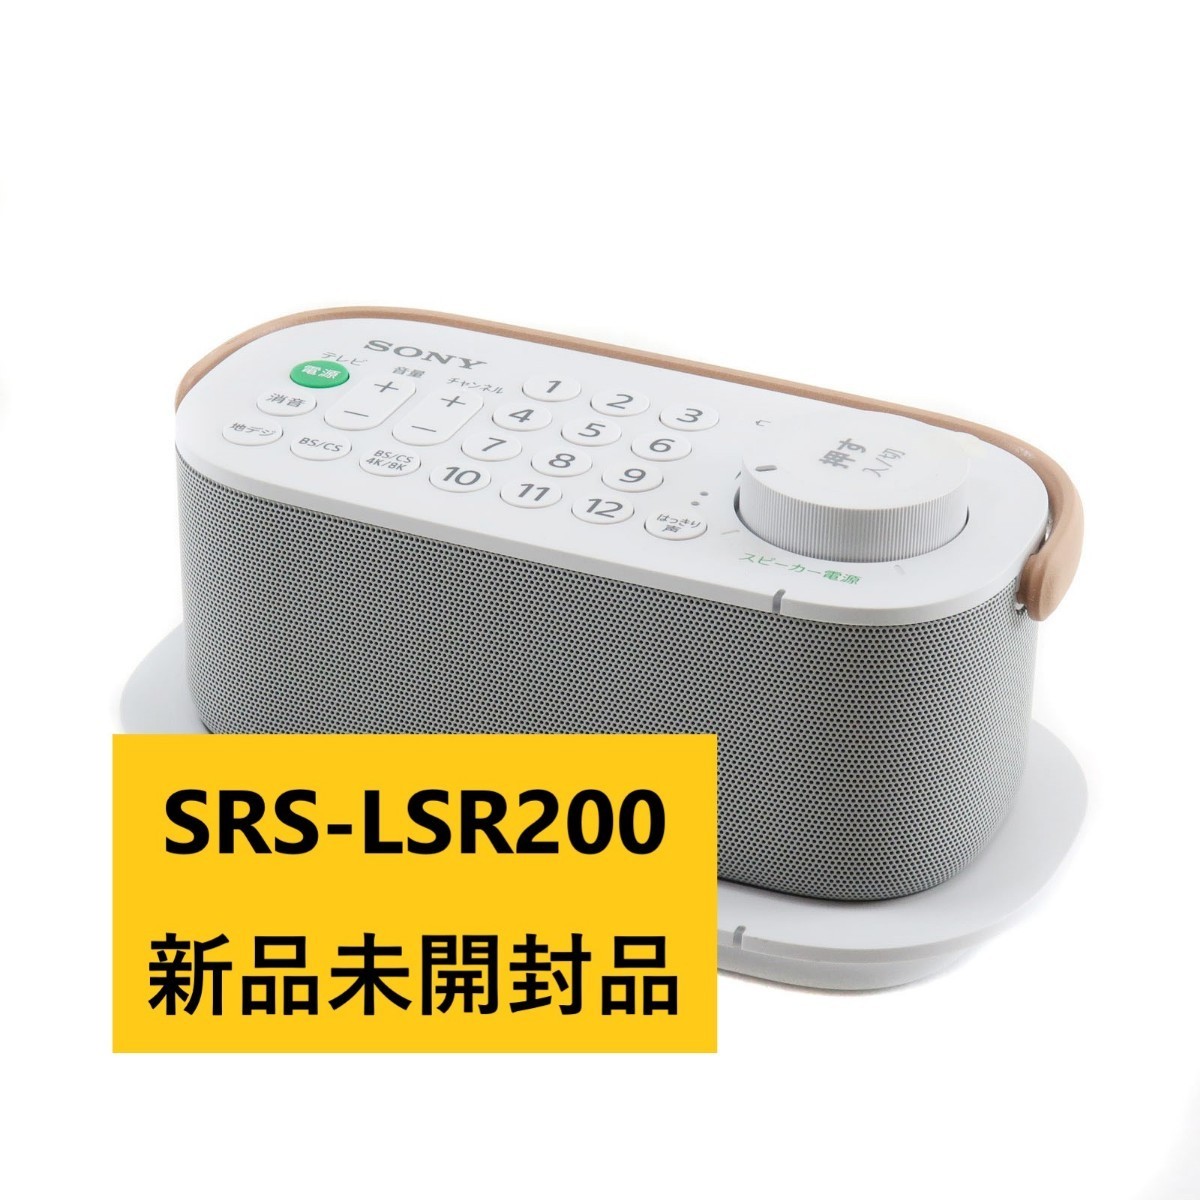 12705円 毎週更新 ソニー SONY ワイヤレススピーカー SRS-LSR200